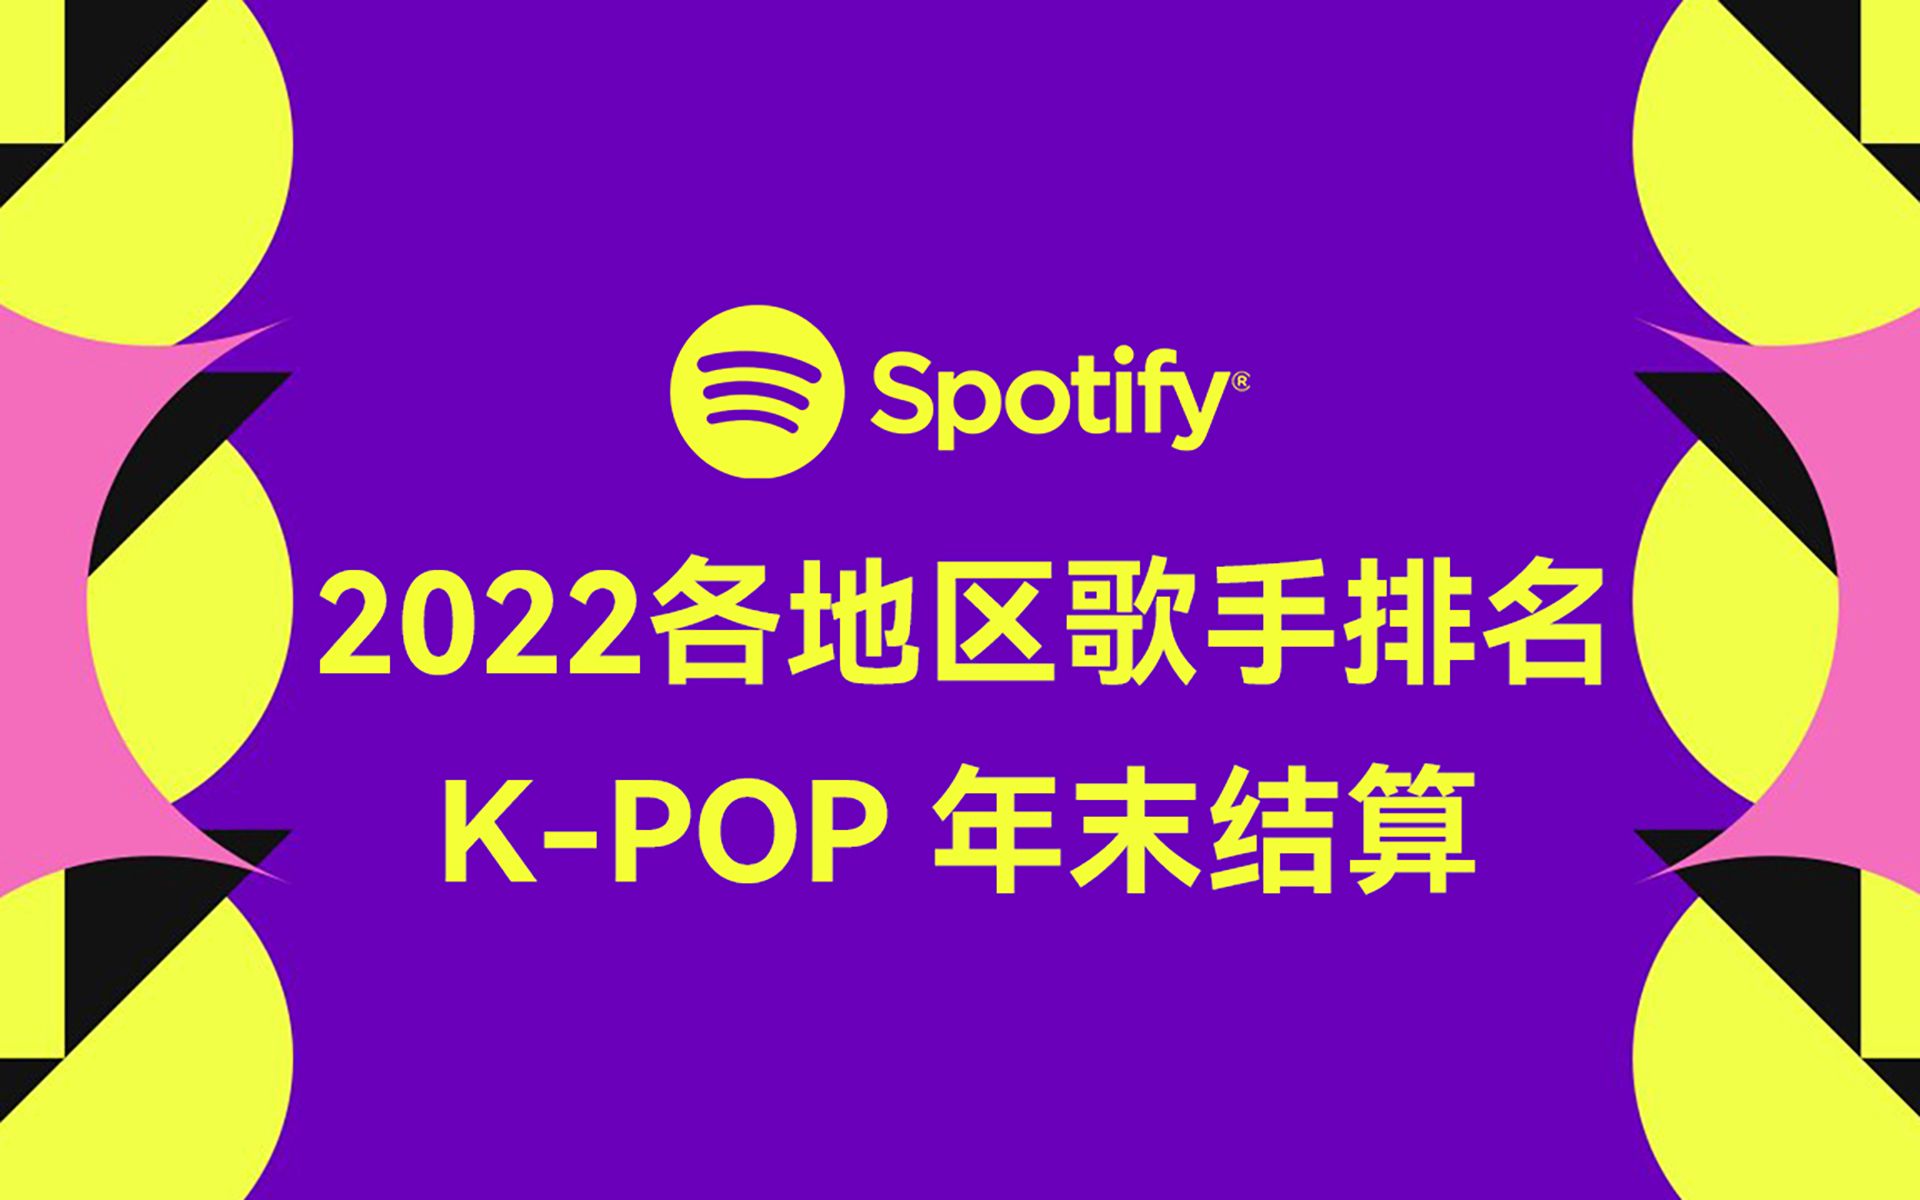 全球开花了吗？各地区榜上有名还是查无此人？Spotify发布2022年各地区榜单之K-POP艺人进榜汇总！